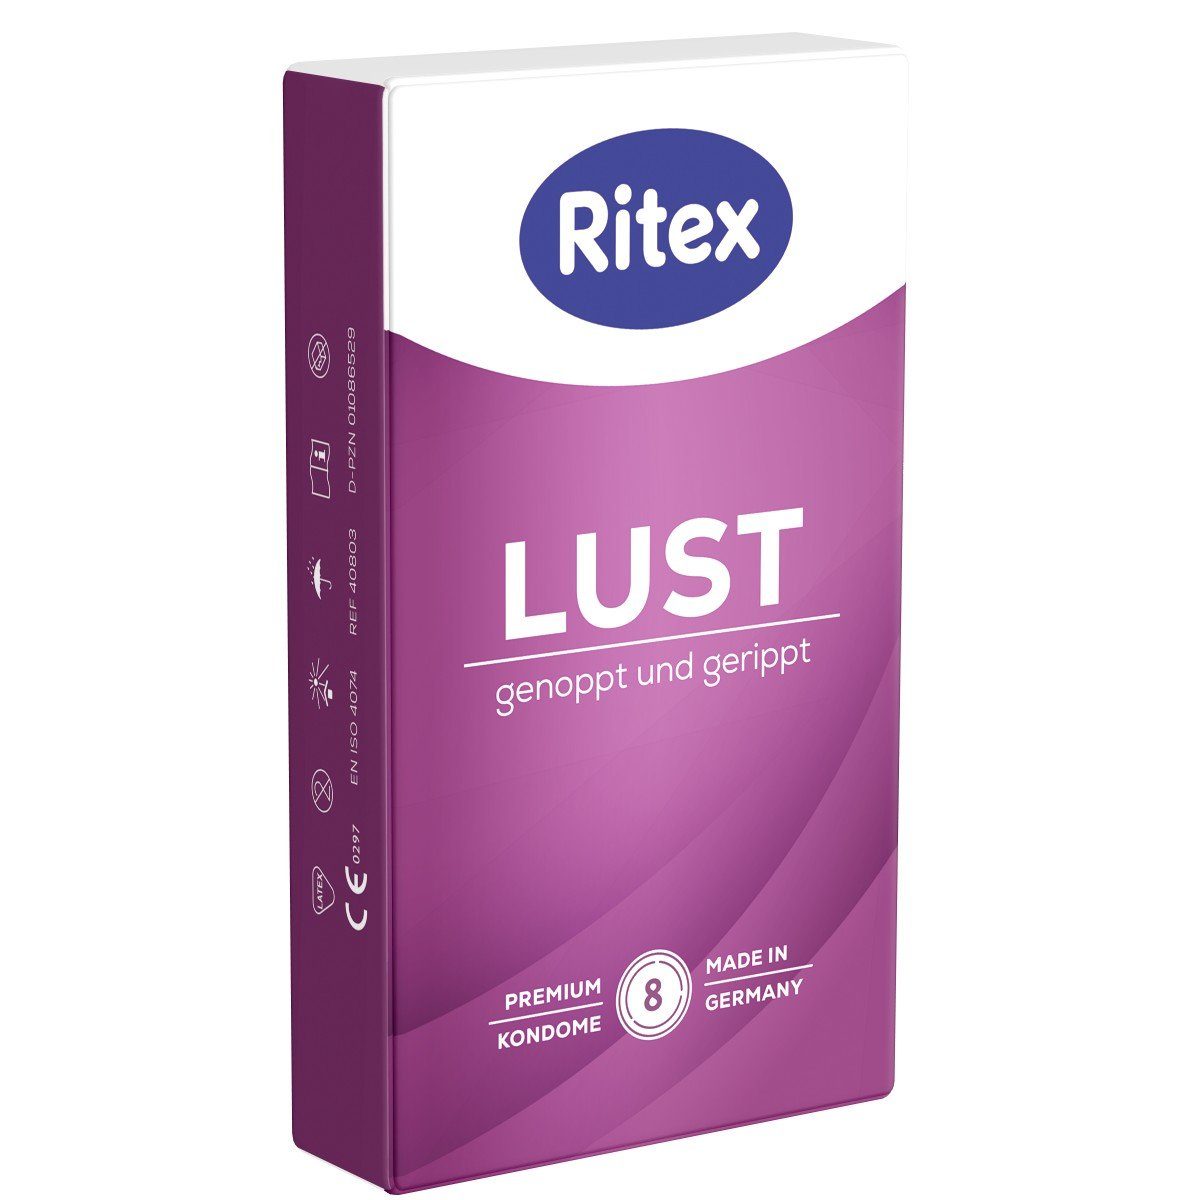 RITEX GmbH Ritex Kondome «Lust» Genoppt und Gerippt Packung mit, 8 St., luststeigernde Kondome mit dreifacher Stimulation